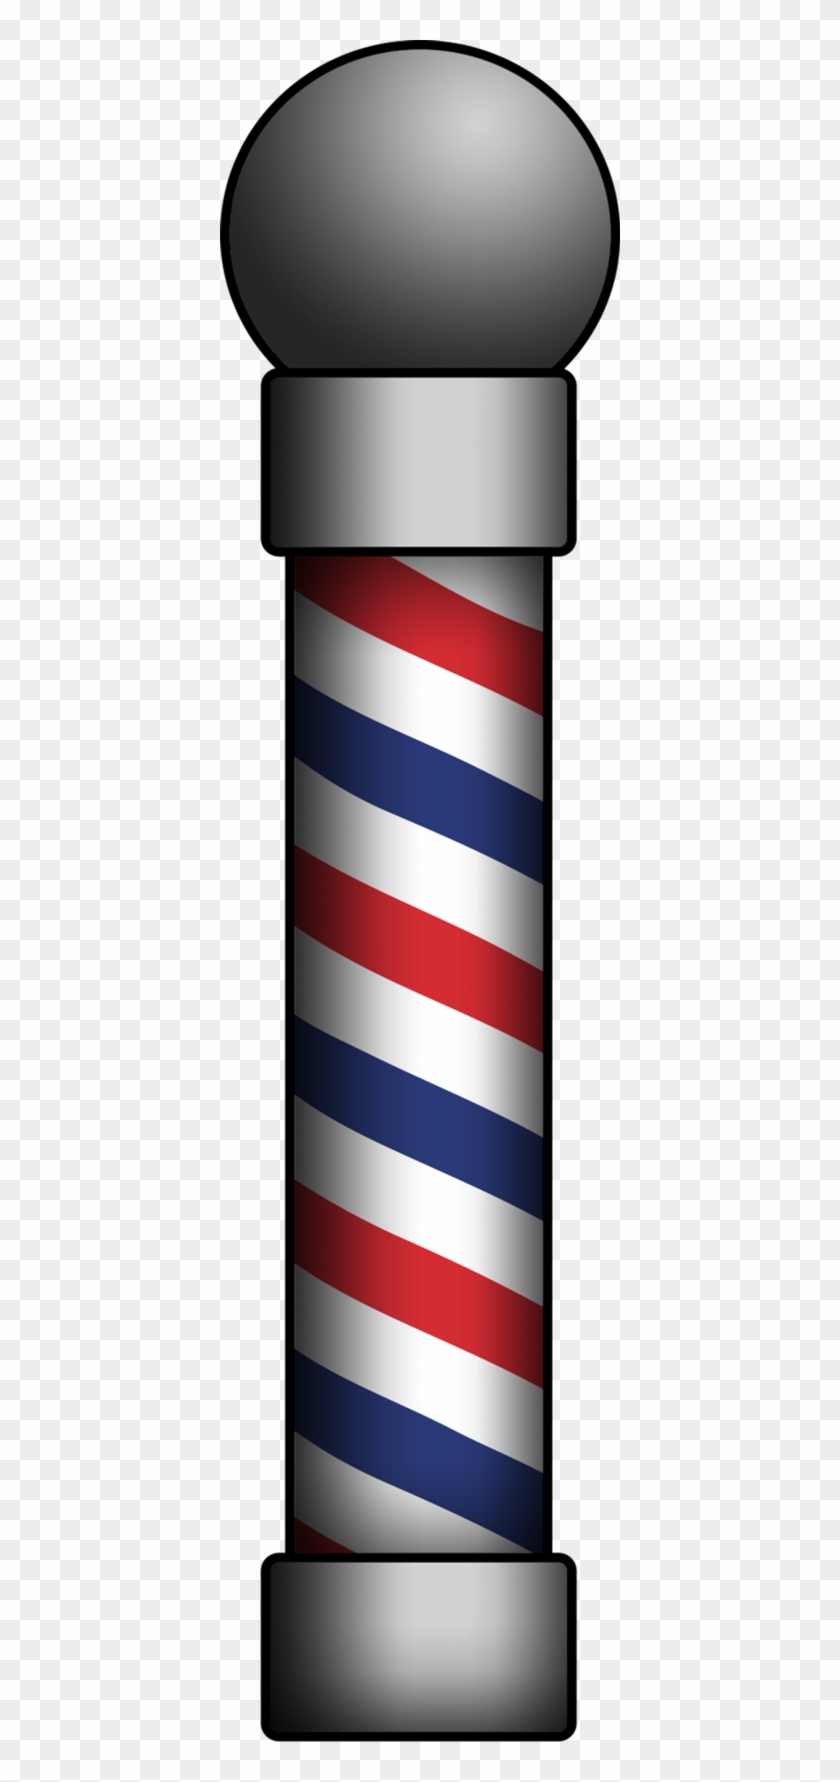 Explore Freeillustration On Deviantart Barber Pole - Explore Freeillustration On Deviantart Barber Pole #1495003